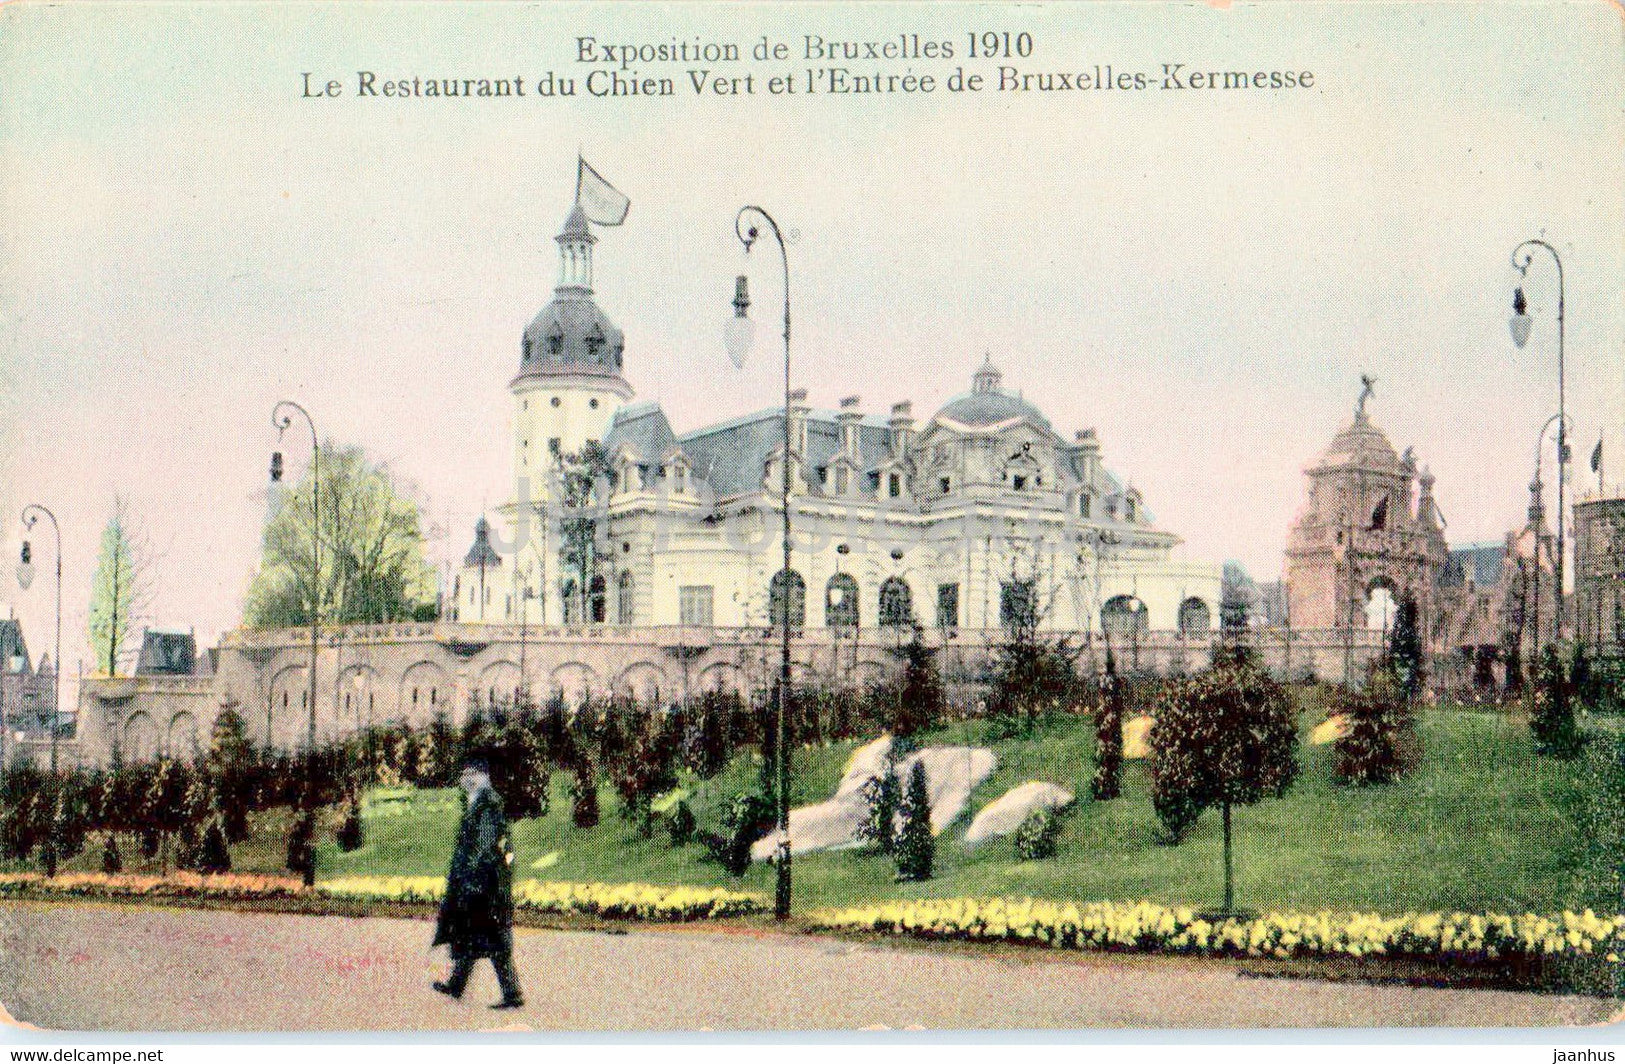 Bruxelles - Brussels - Exposition Bruxelles  1910 - Le Restaurant du Chien Vert - old postcard - Belgium - unused - JH Postcards